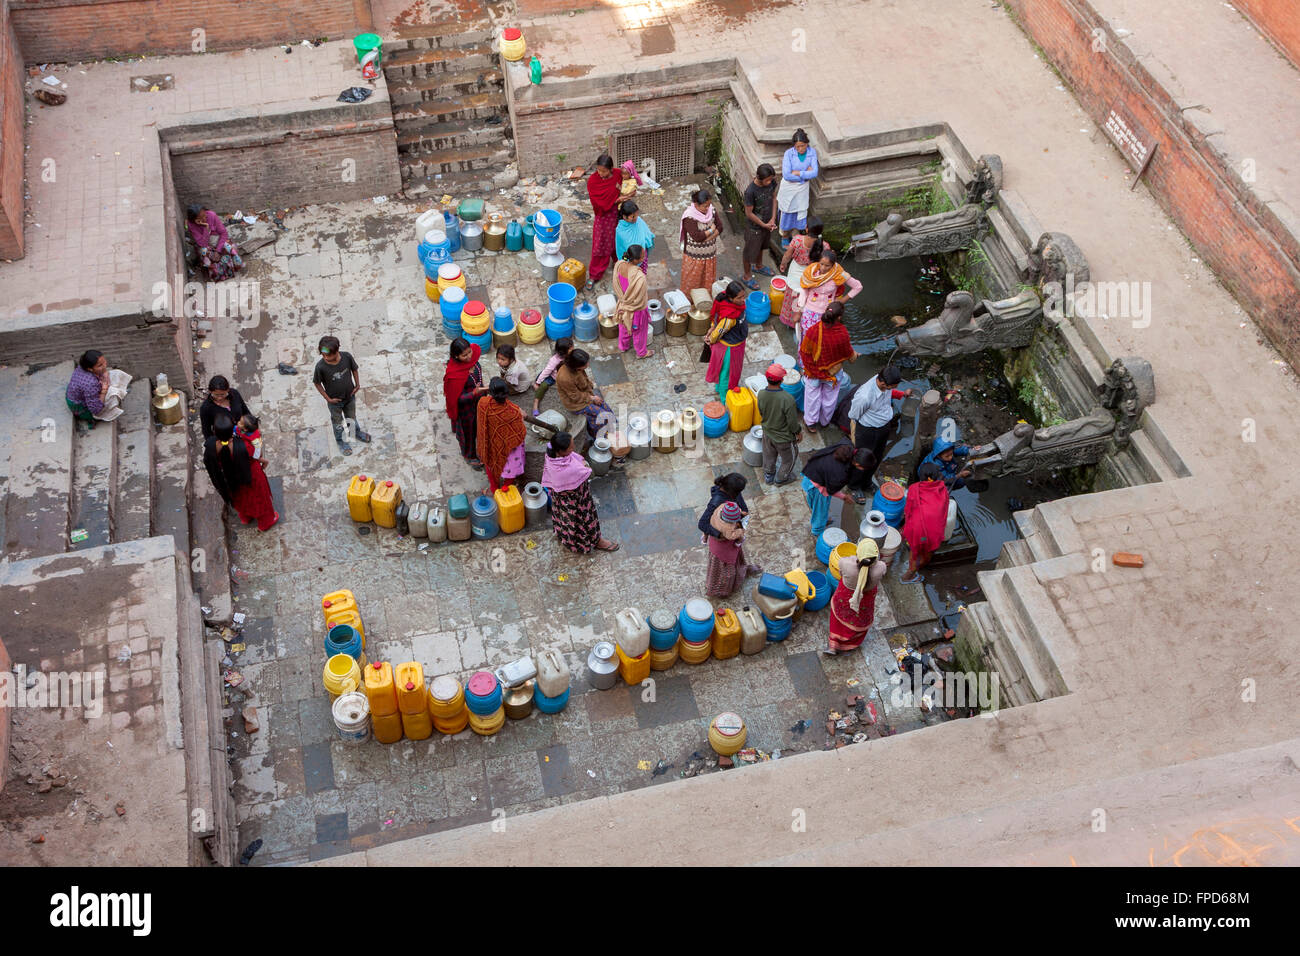 Il Nepal, Patan. Le donne e gli uomini schierati al manga Hiti, una pubblica fontana di acqua che serve i residenti che non hanno acqua corrente. Foto Stock